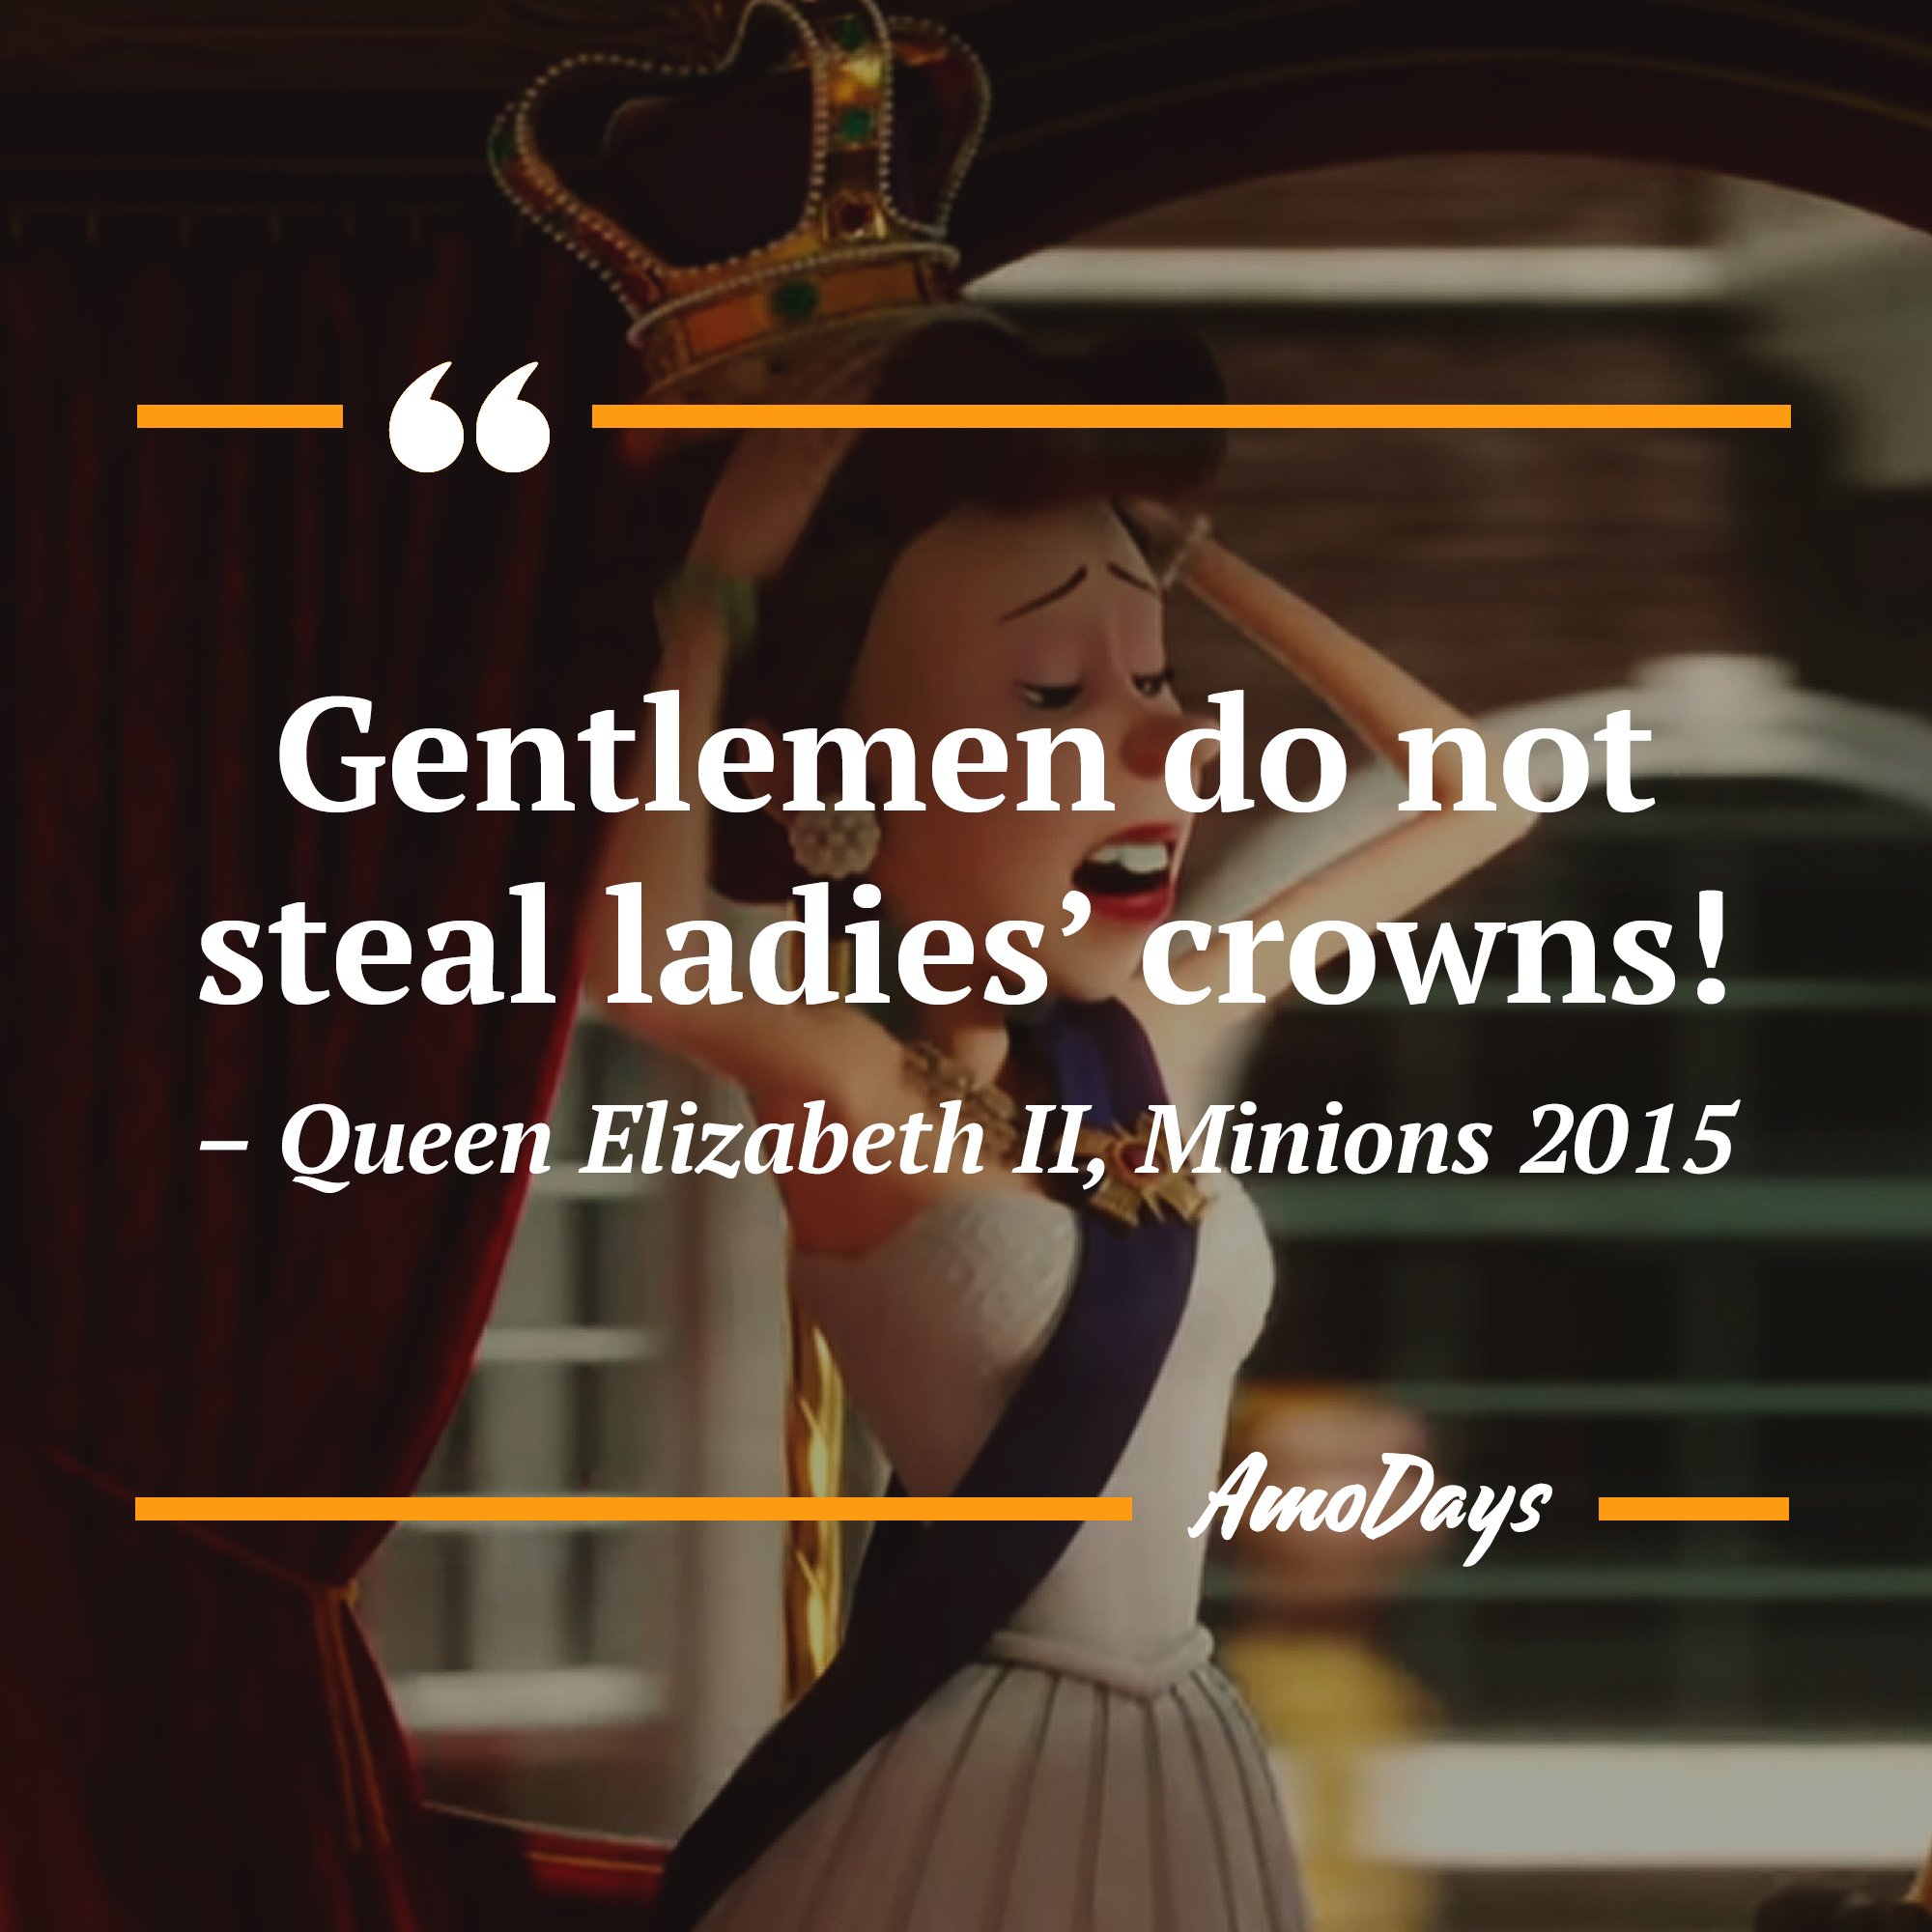 Queen Elizabeth II's quote in "Minions" 2015 “Gentlemen do not steal ladies’ crowns!” | Image: AmoDays